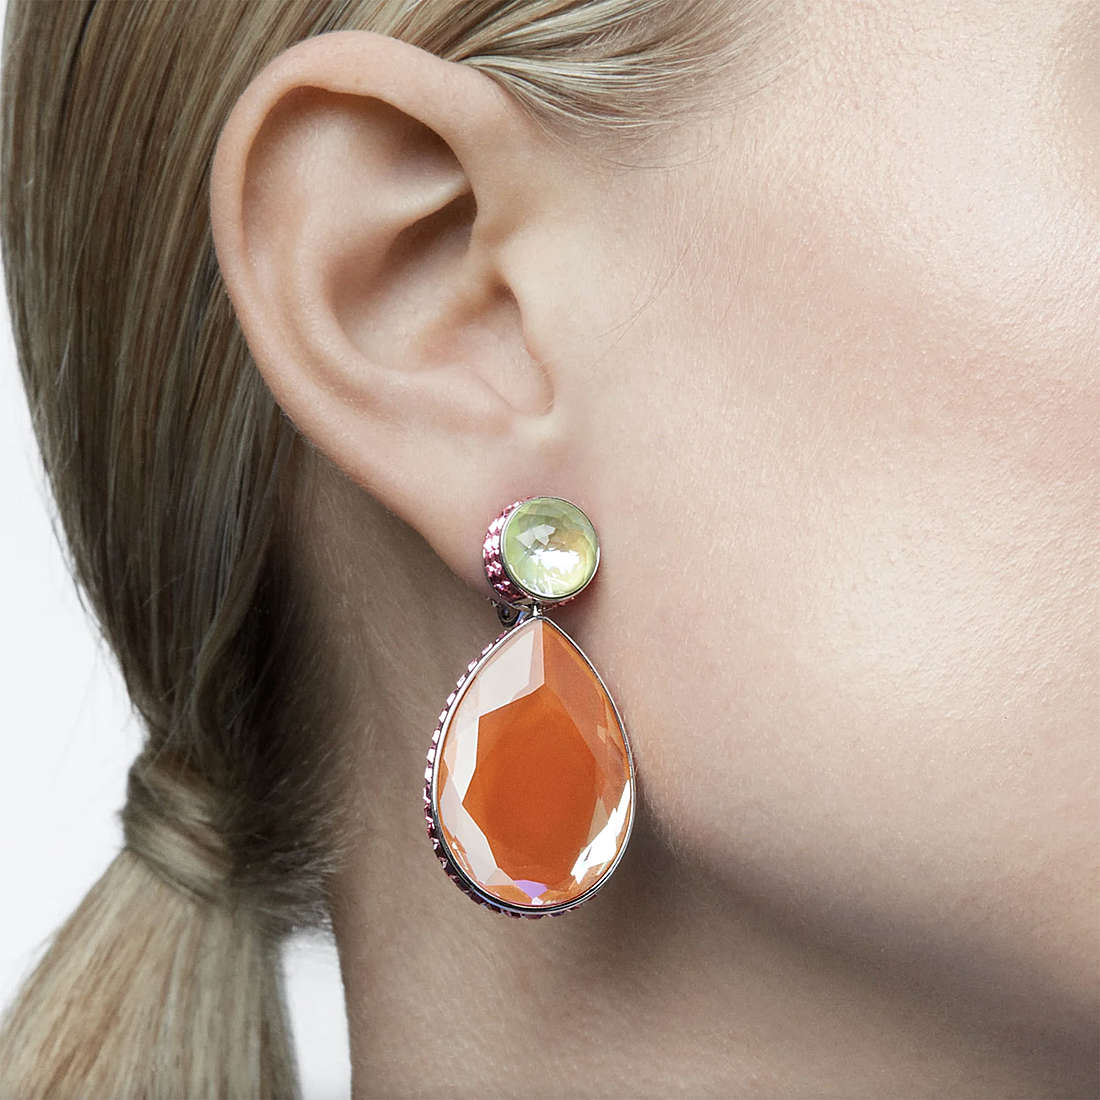 Swarovski earrings Orbita woman 5616019 wearing